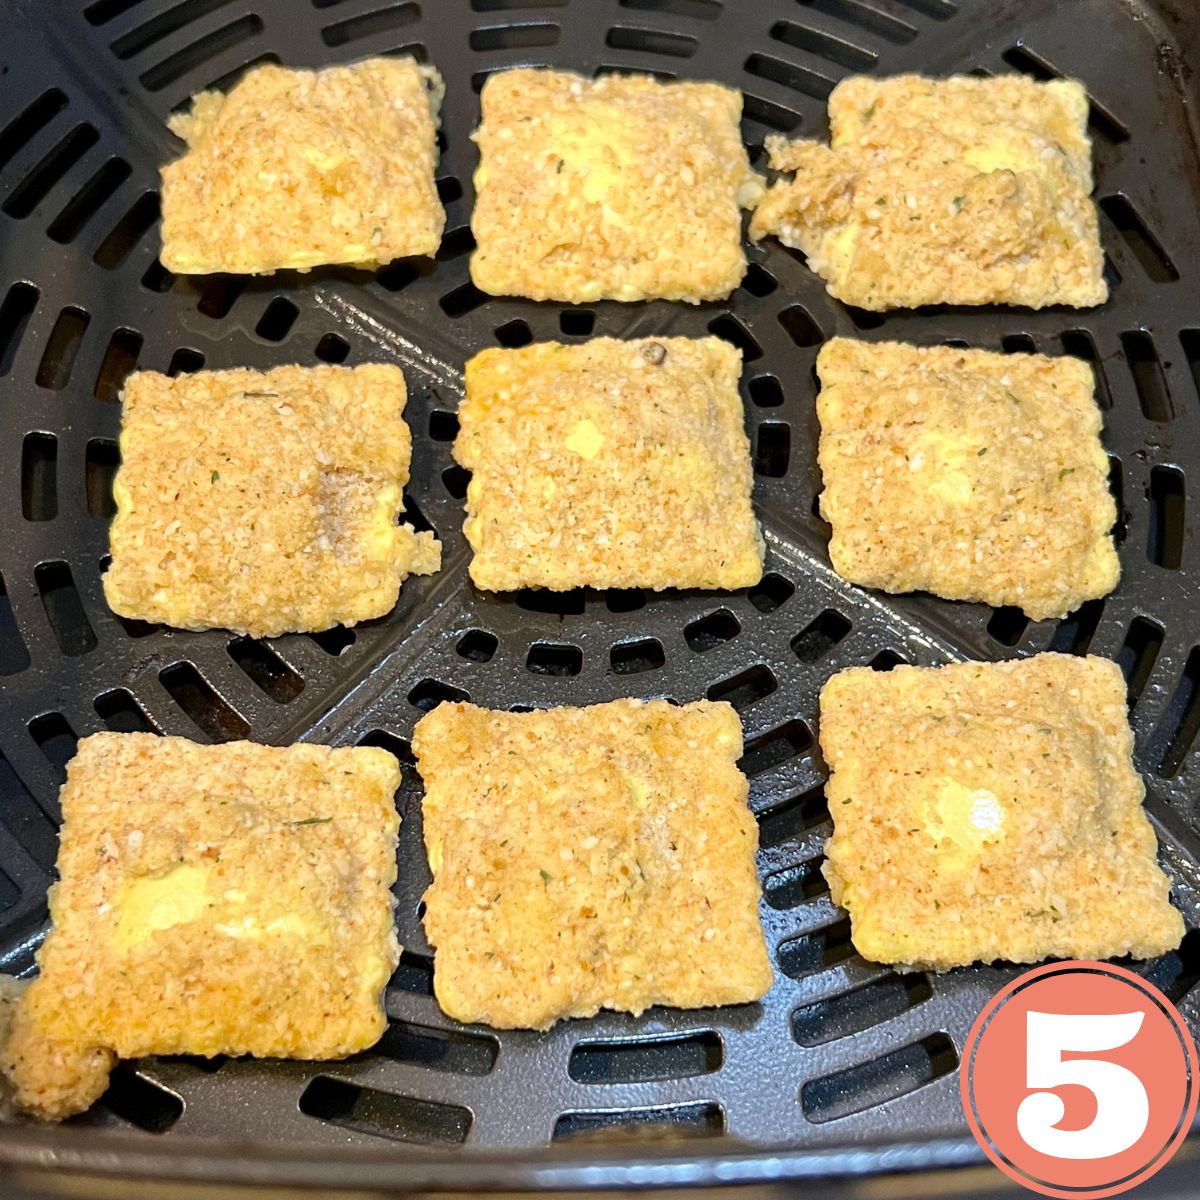 Nine toasted raviolis in an air fryer basket